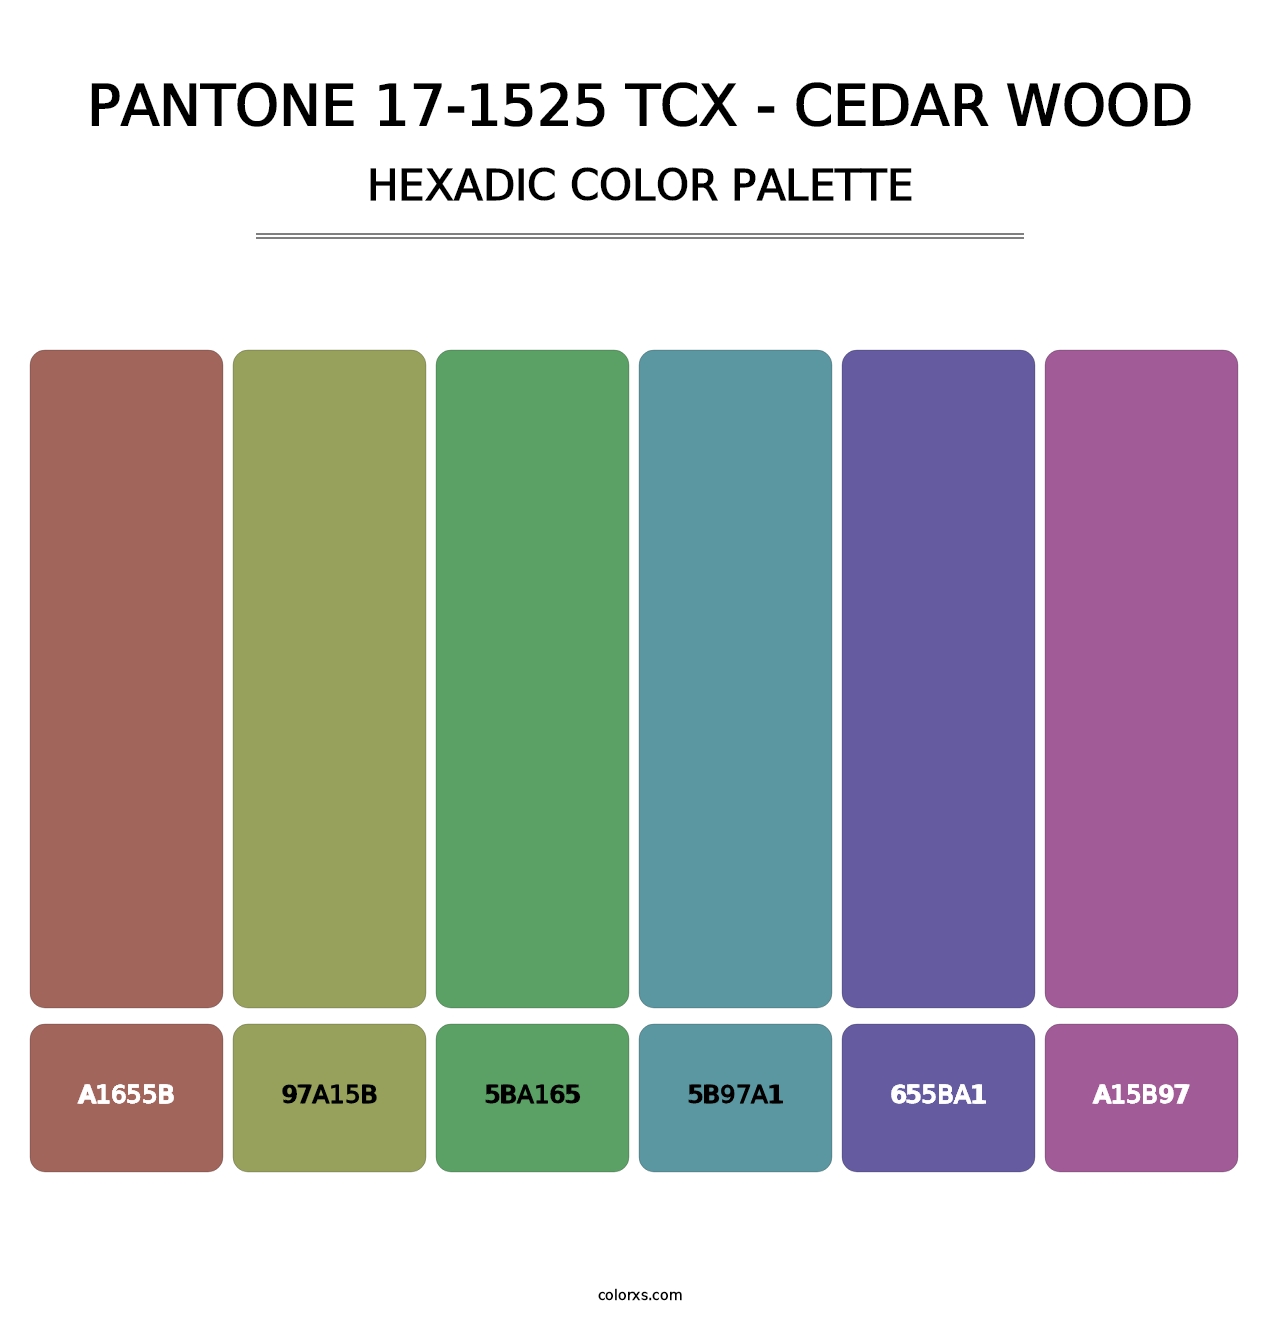 PANTONE 17-1525 TCX - Cedar Wood - Hexadic Color Palette